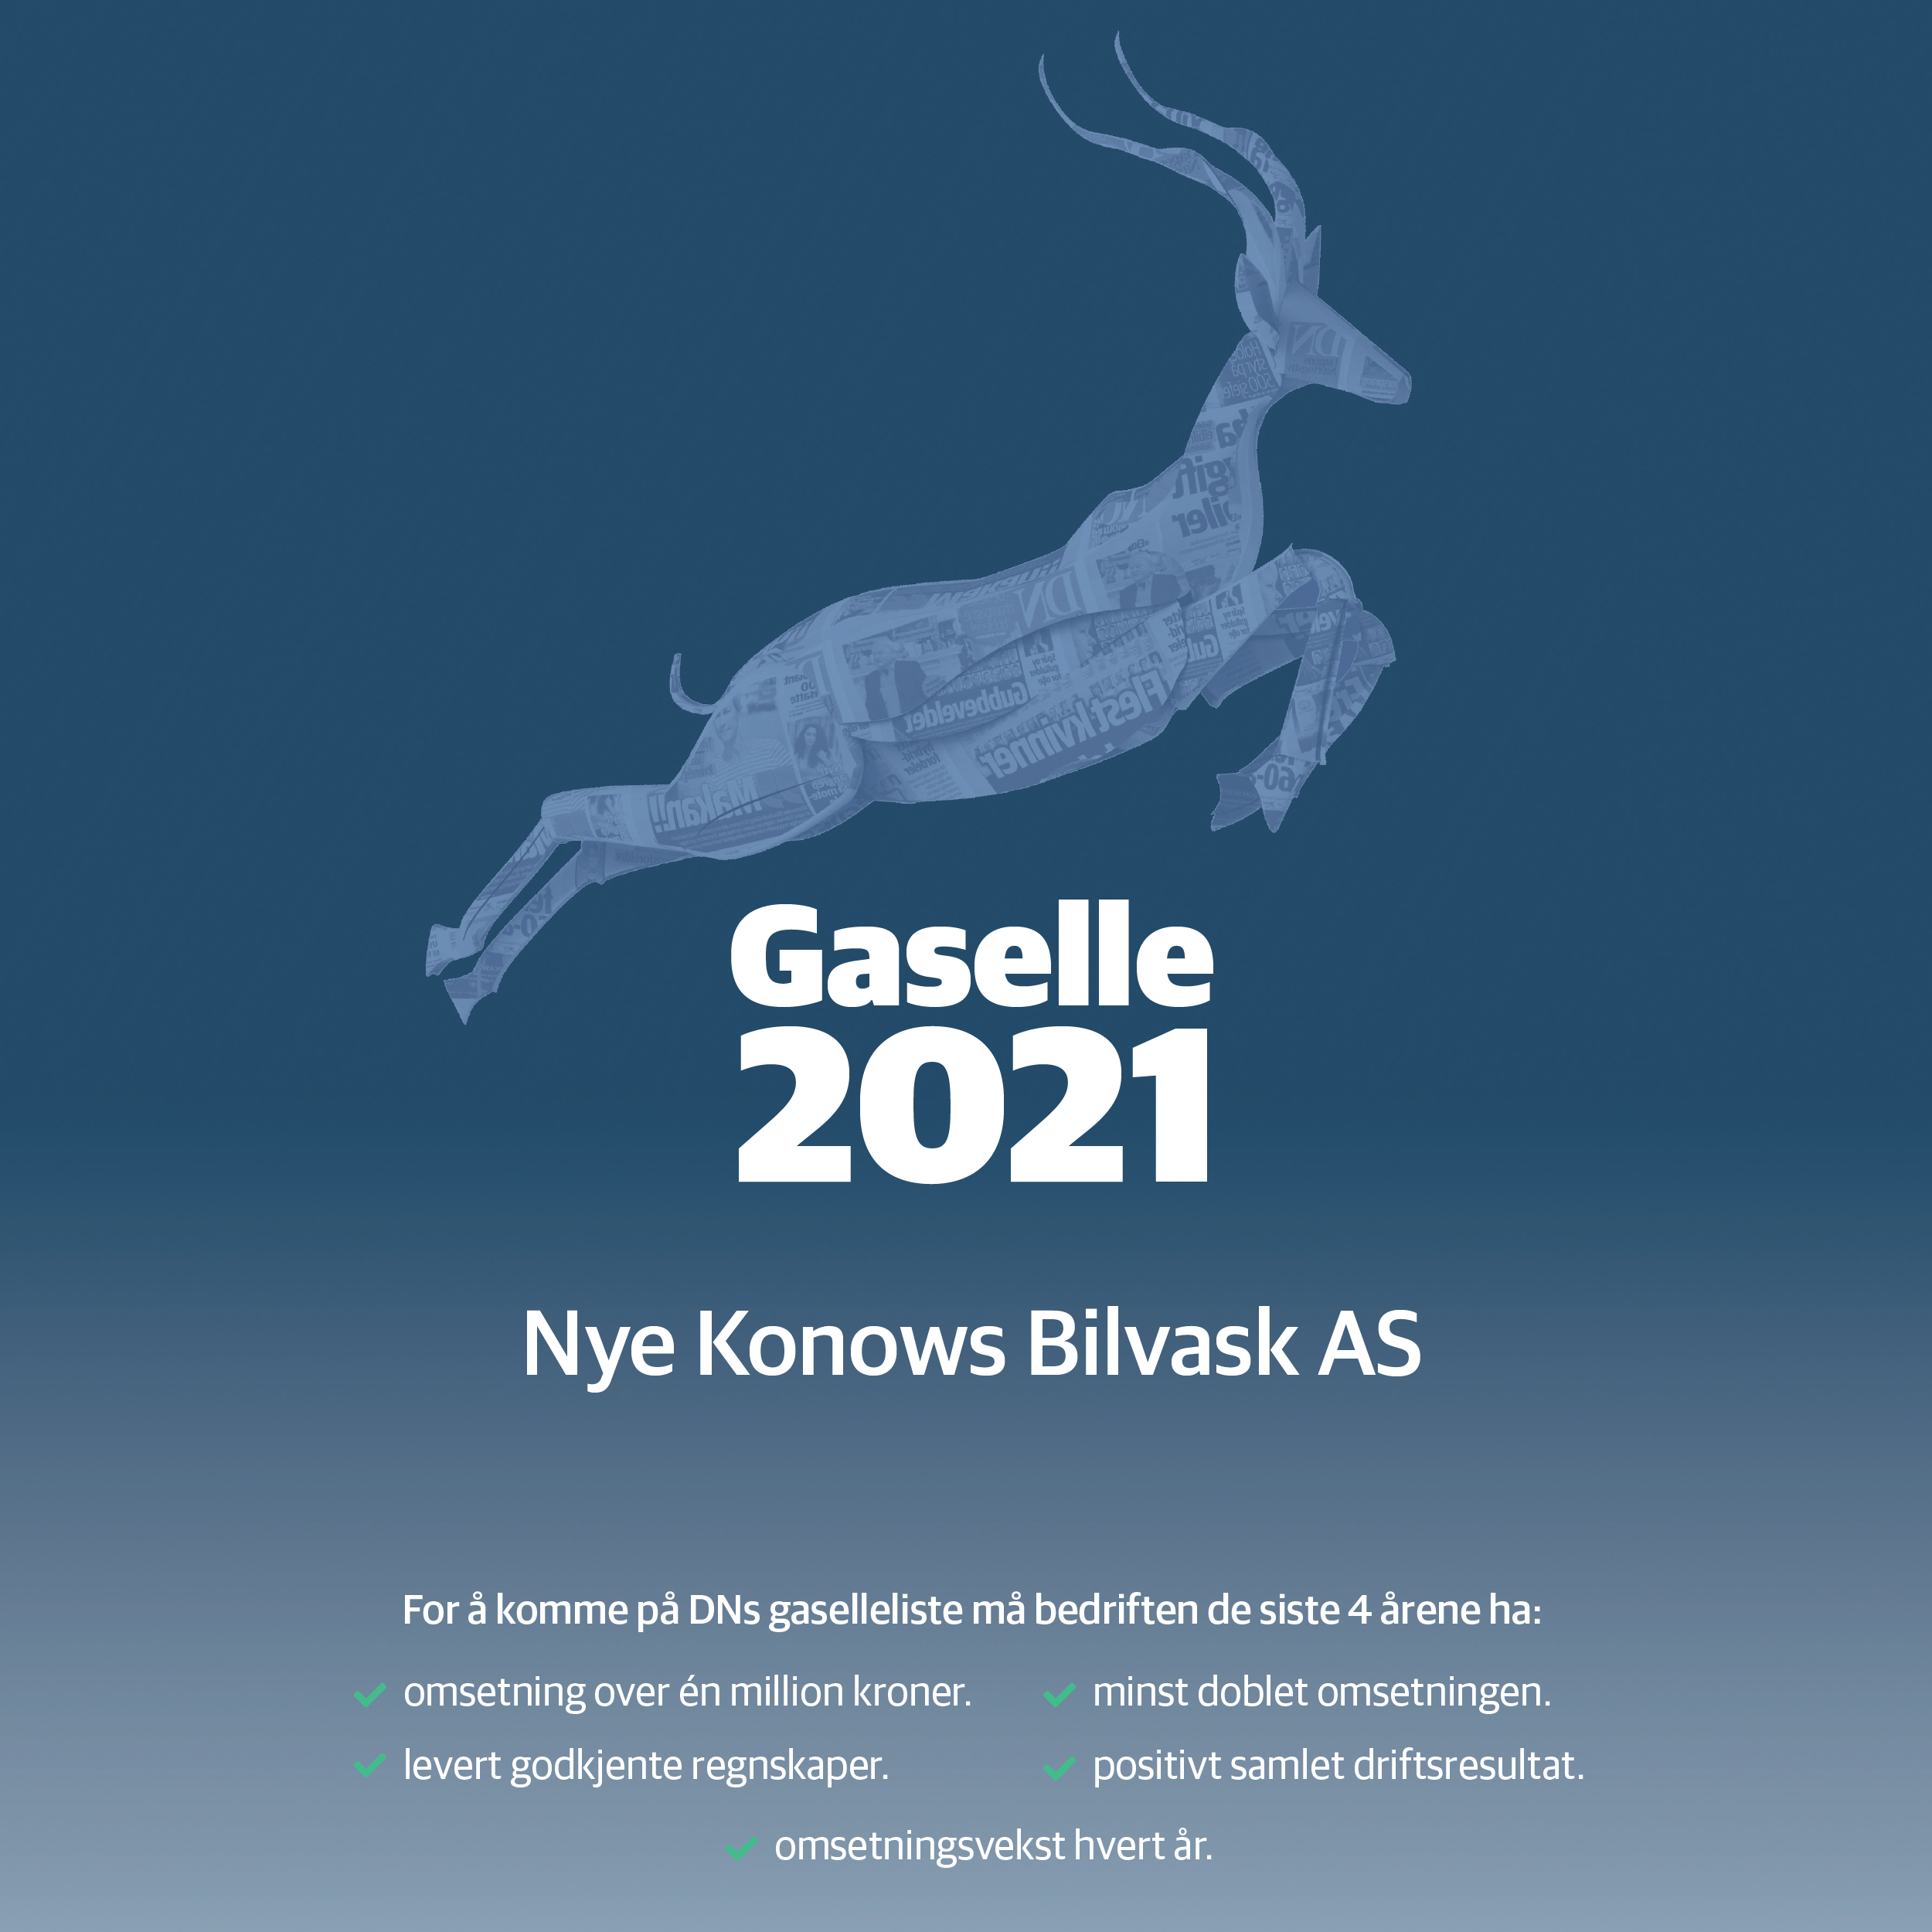 Gaselle 2021 Nye Konows Bilvask AS